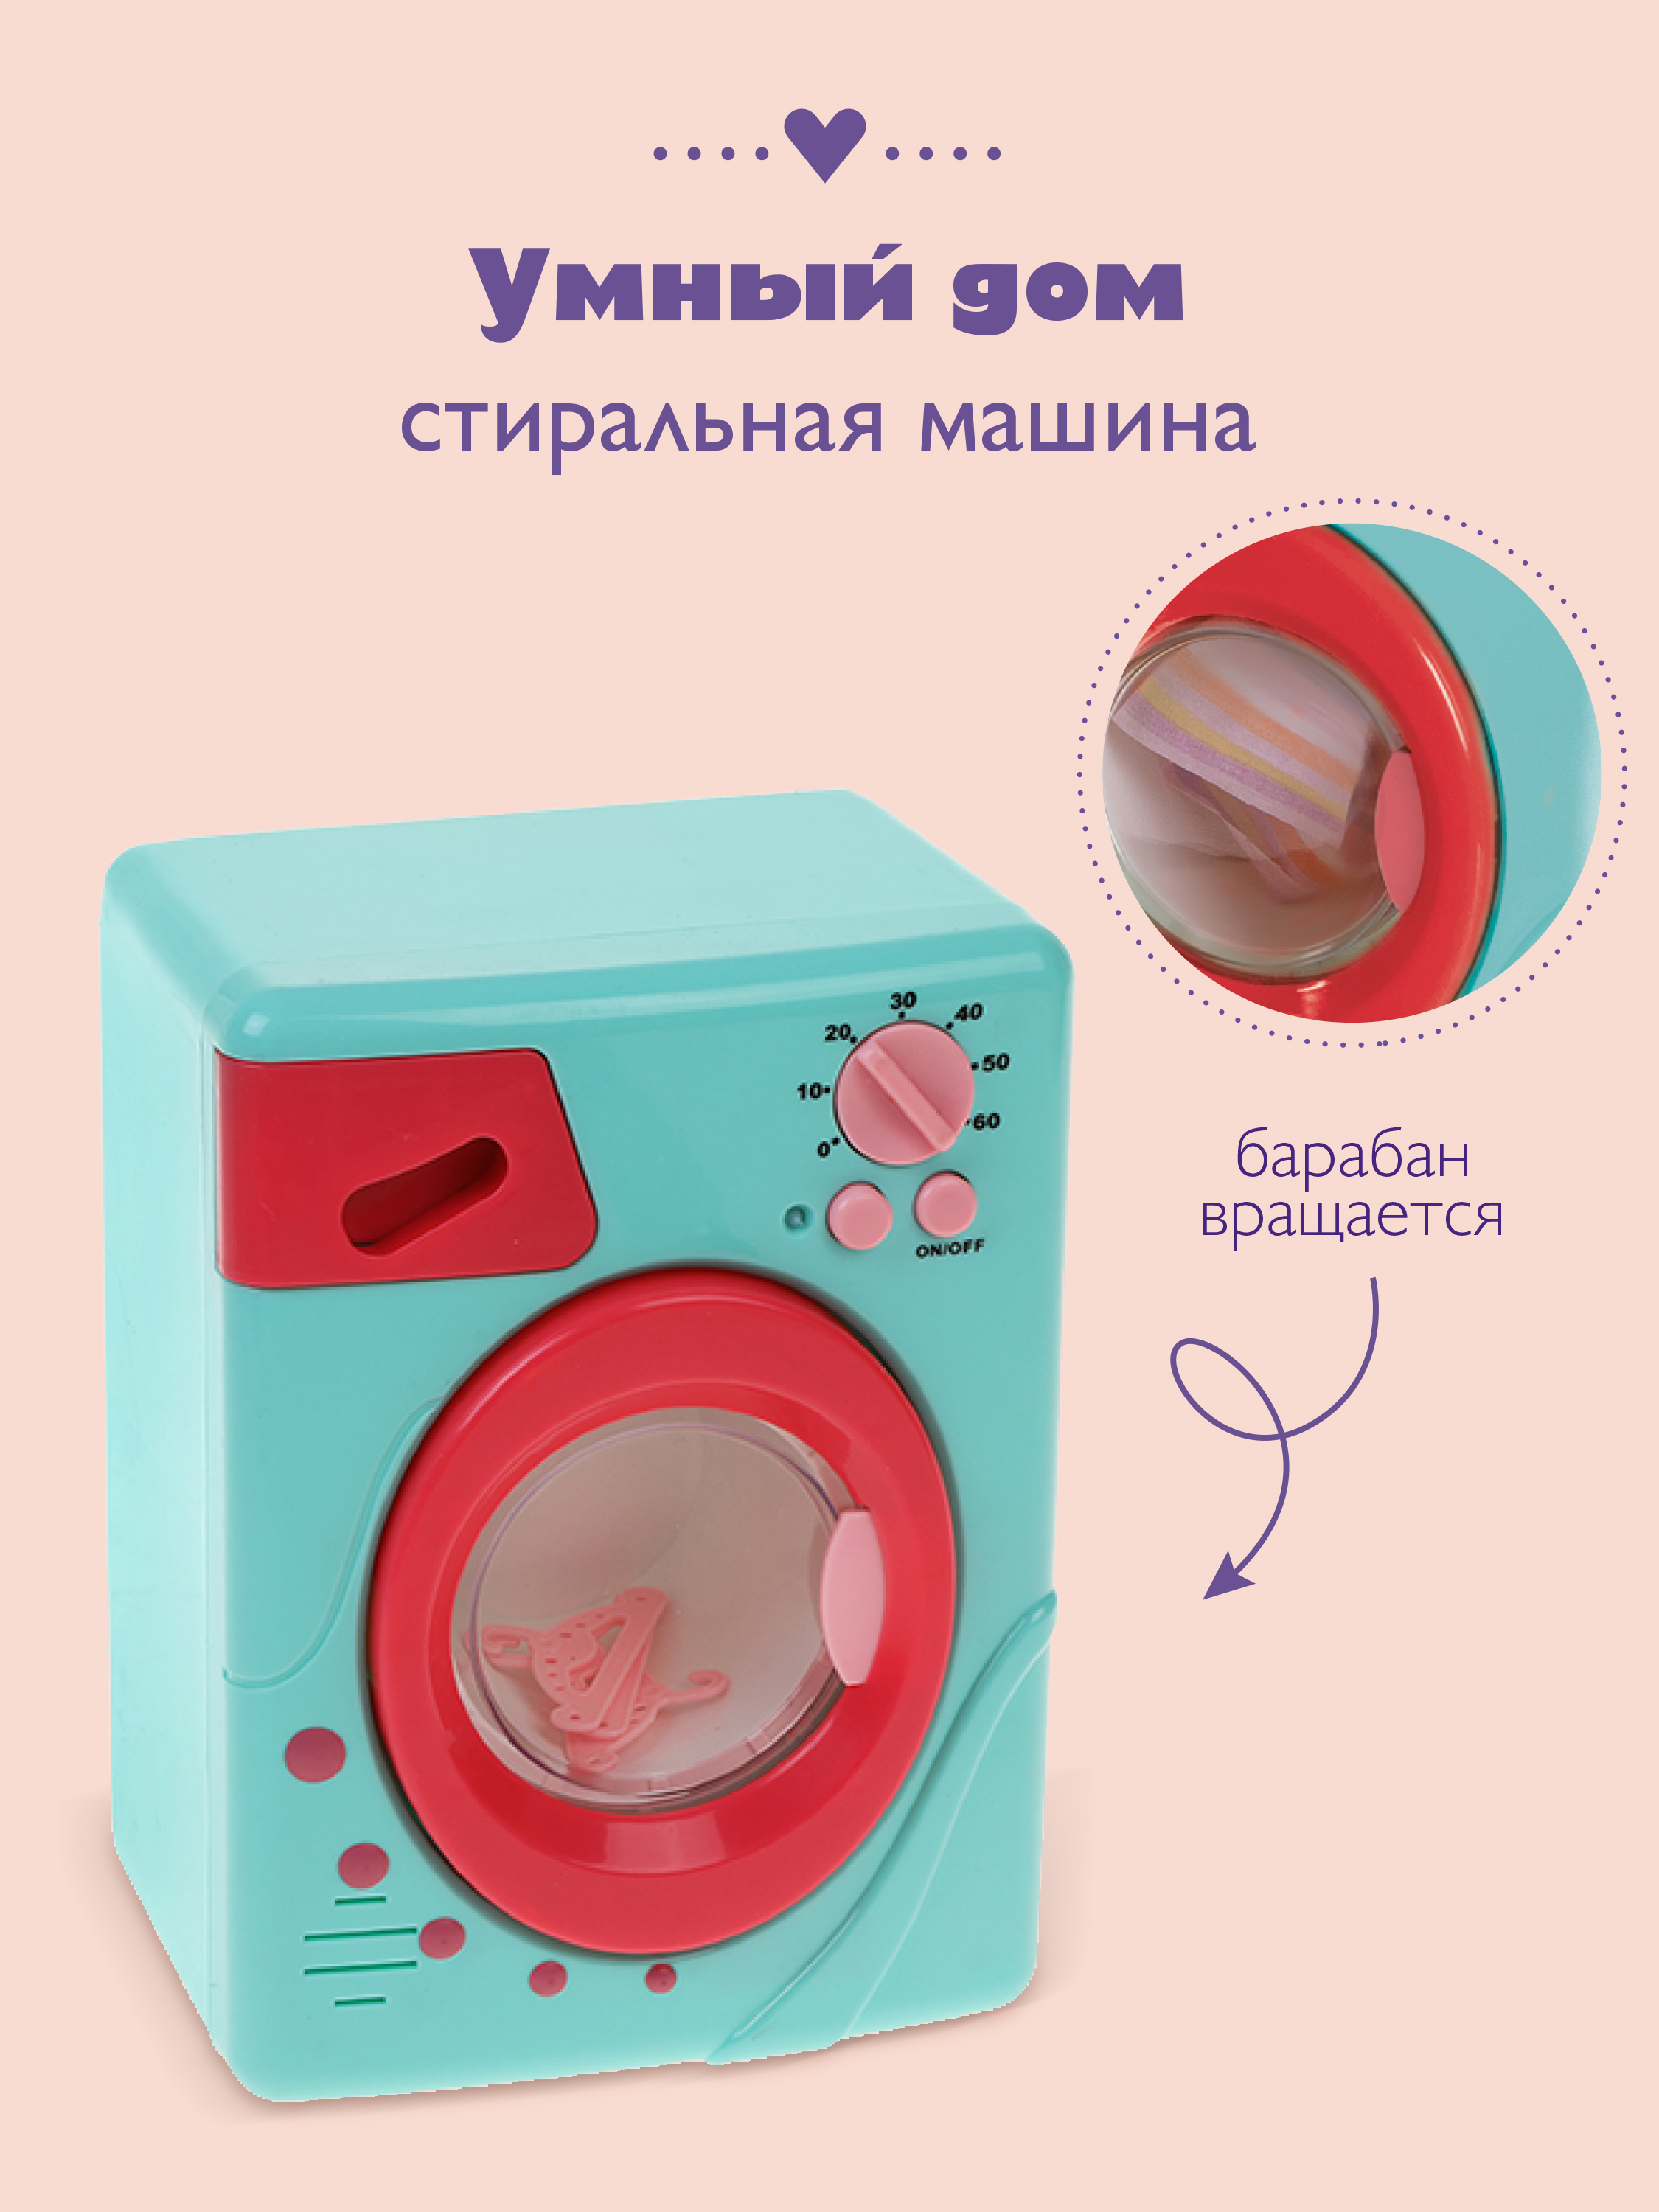 Стиральная машина электронная Умный дом, цвет: коралл стиральная машина